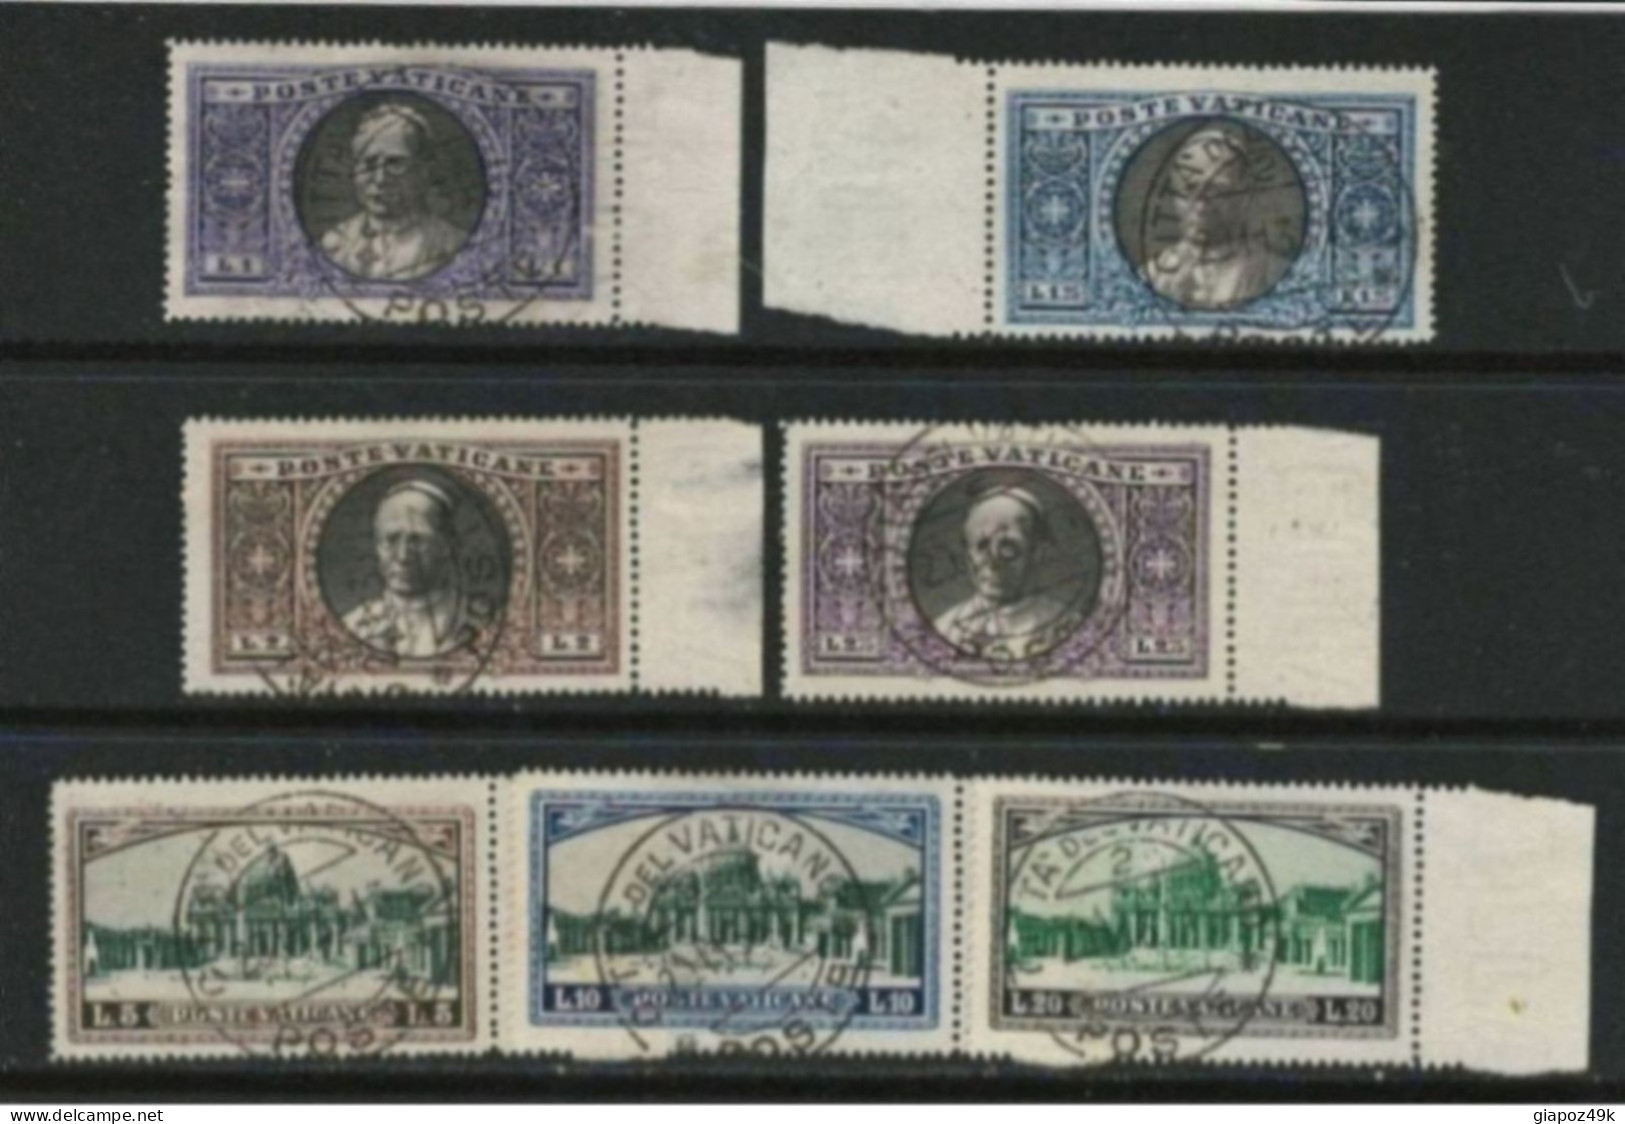 ● VATICANO 1933 ֎ Giardini E Medaglioni ֎ N. 28 / 34 Usati ● Cat. 200 € ● Serietta ● Lotto N. 70 B ● - Used Stamps